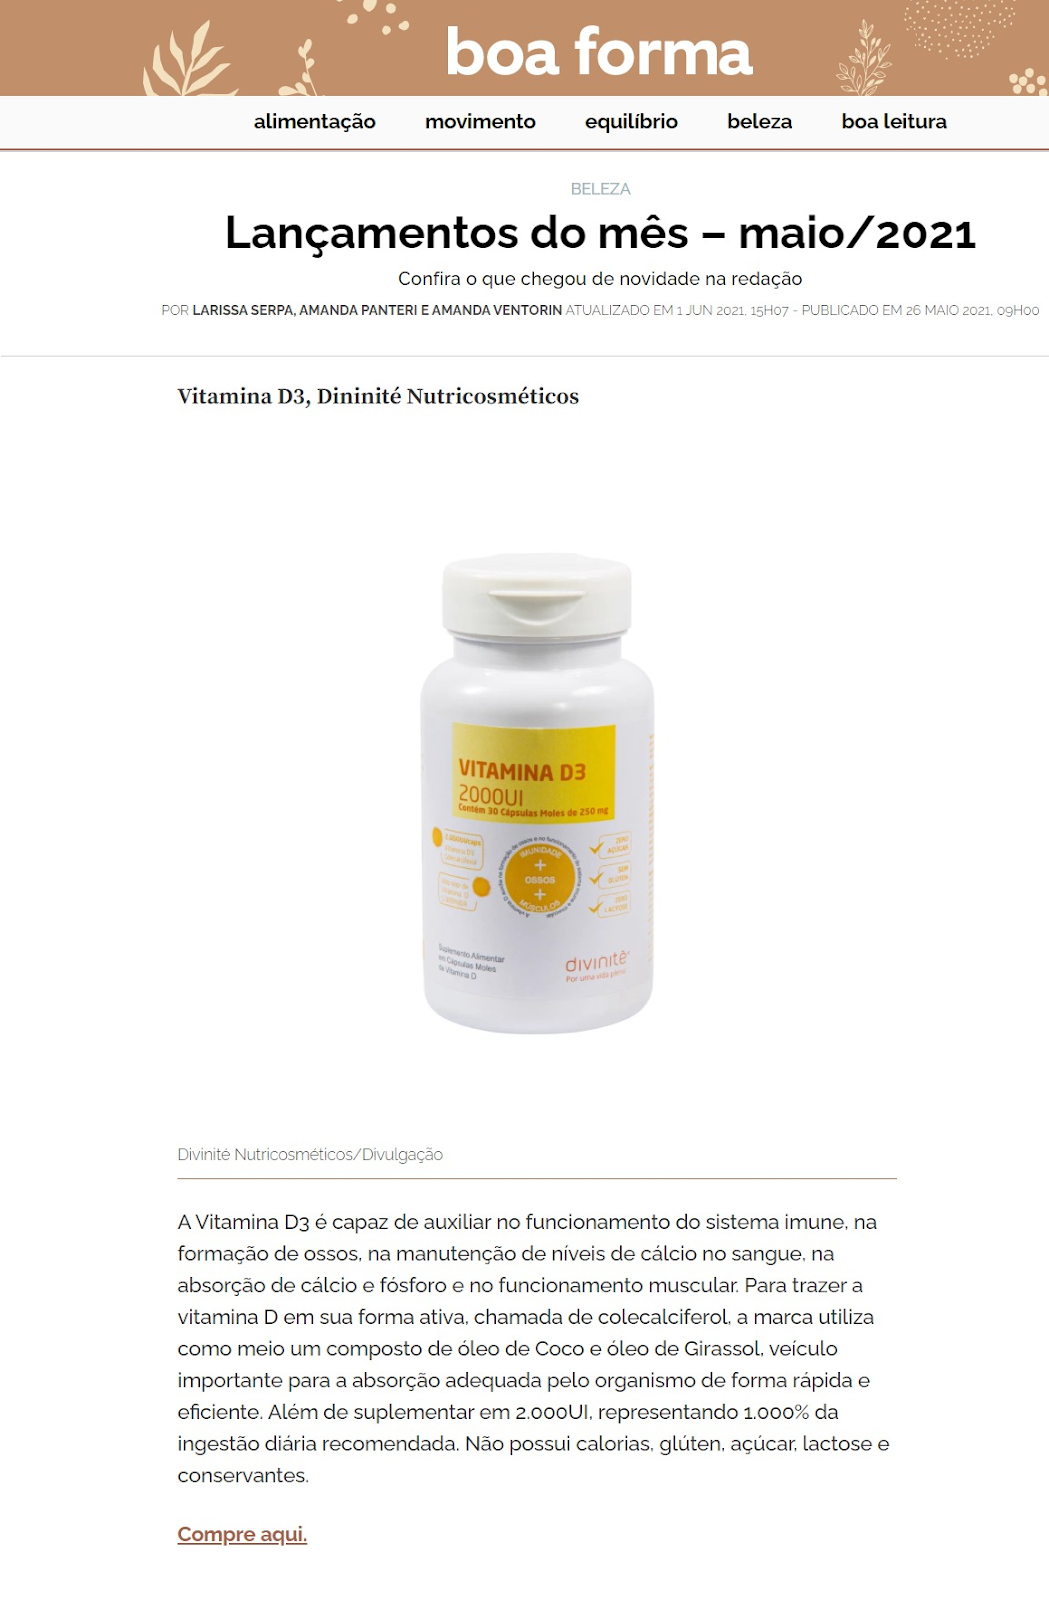 Boa Forma recomenda Vitamina D3 em lançamentos - matéria